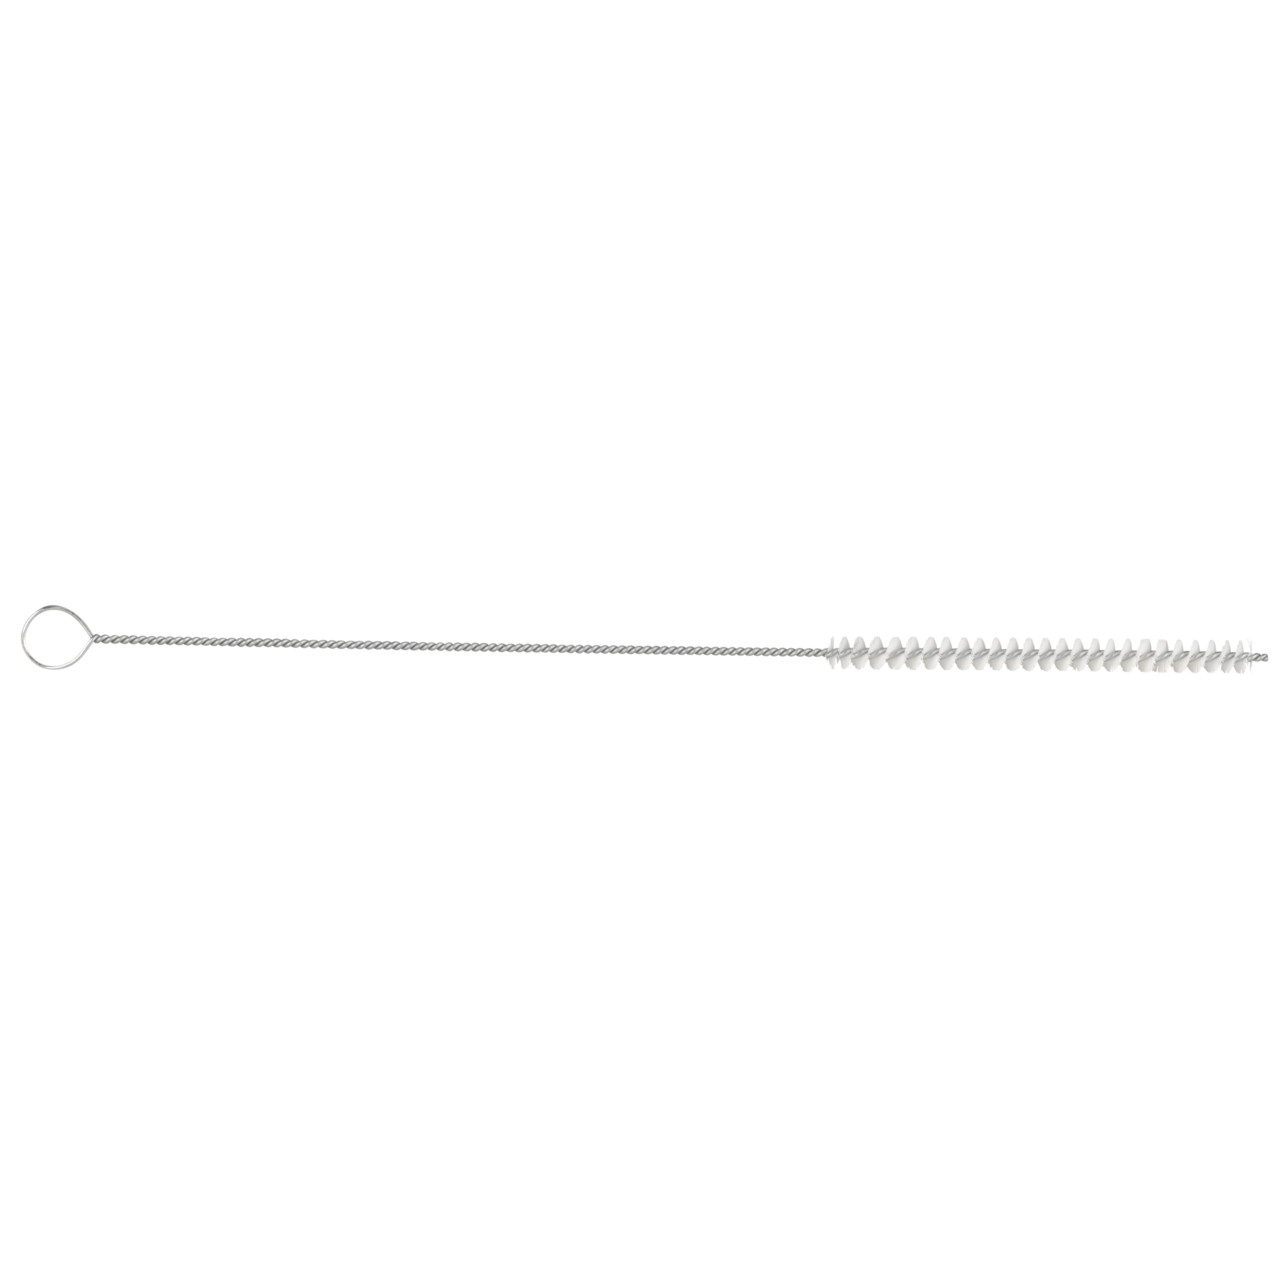 TYROLIT cepillo cilíndrico para tubos D-I 15-300 Para uso universal, forma: 18ROODG - (cepillo cilíndrico para tubos), Art. 34203573